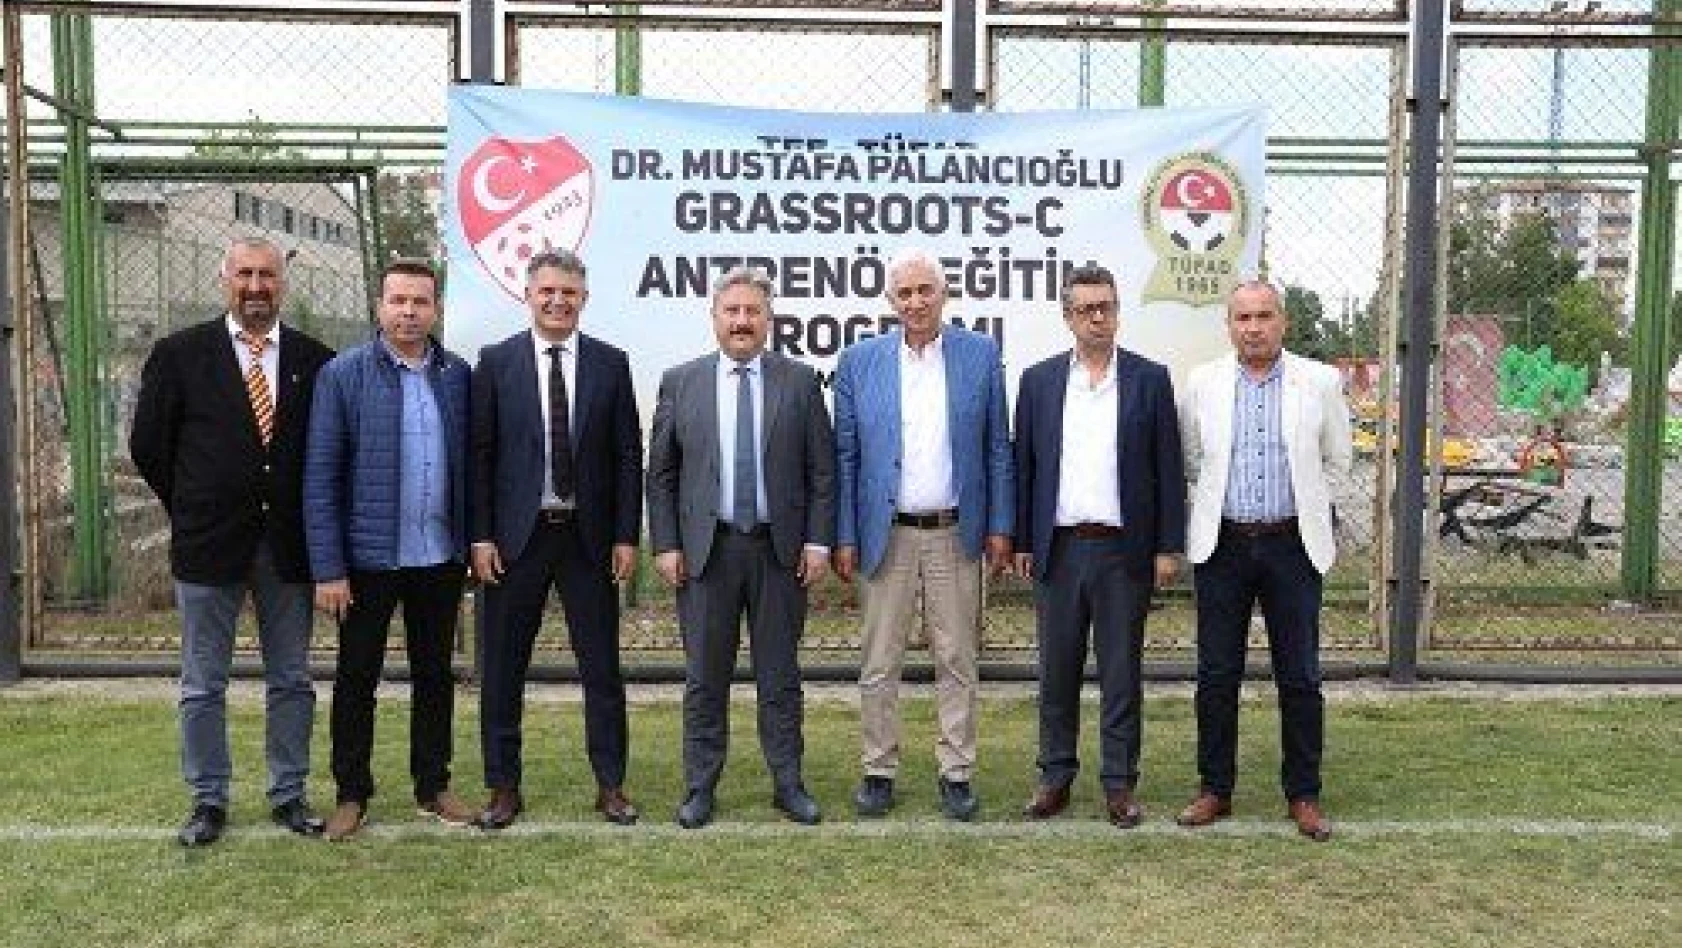 TÜFAD ve TFF Antrenör Eğitim Programına Başkan Palancıoğlu'nun ismi verildi